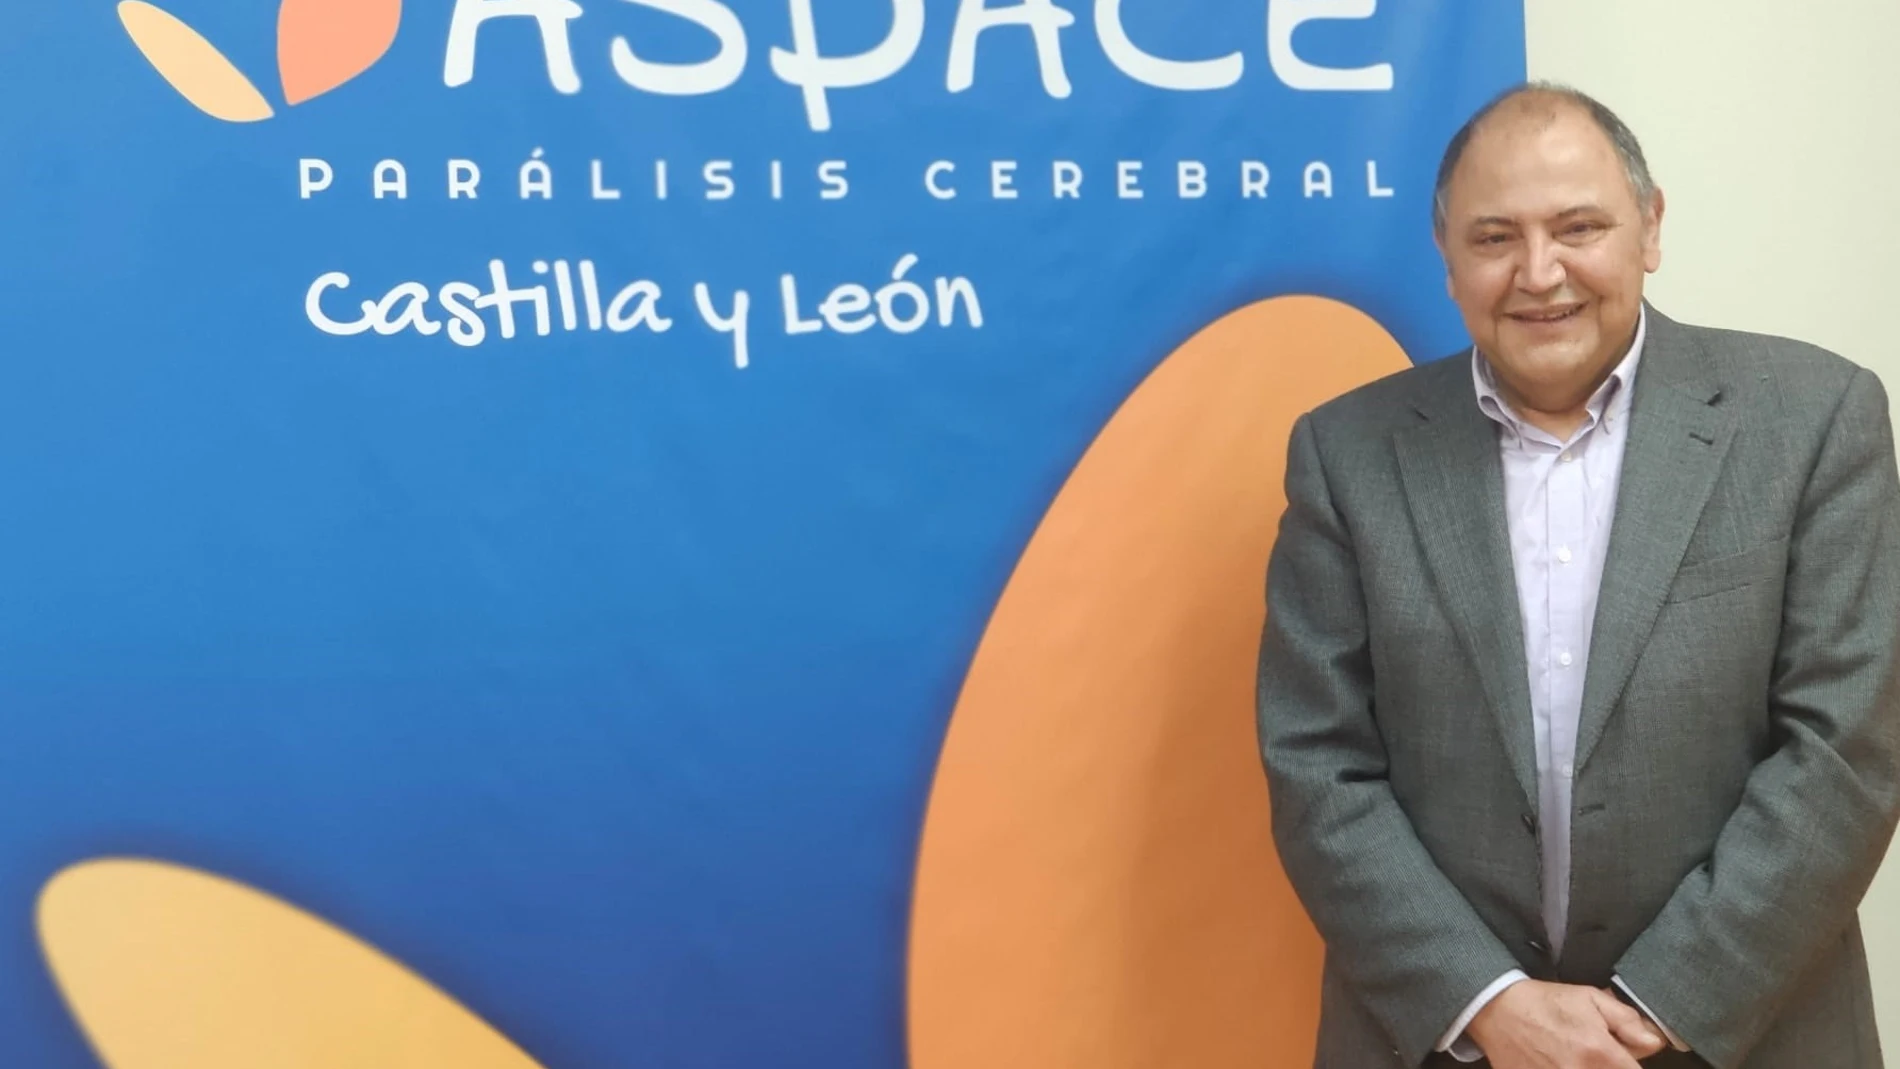 El presidente de Aspace Castilla y León, Jesús Alberto Martín Herrero.ASPACE CYL28/04/2021